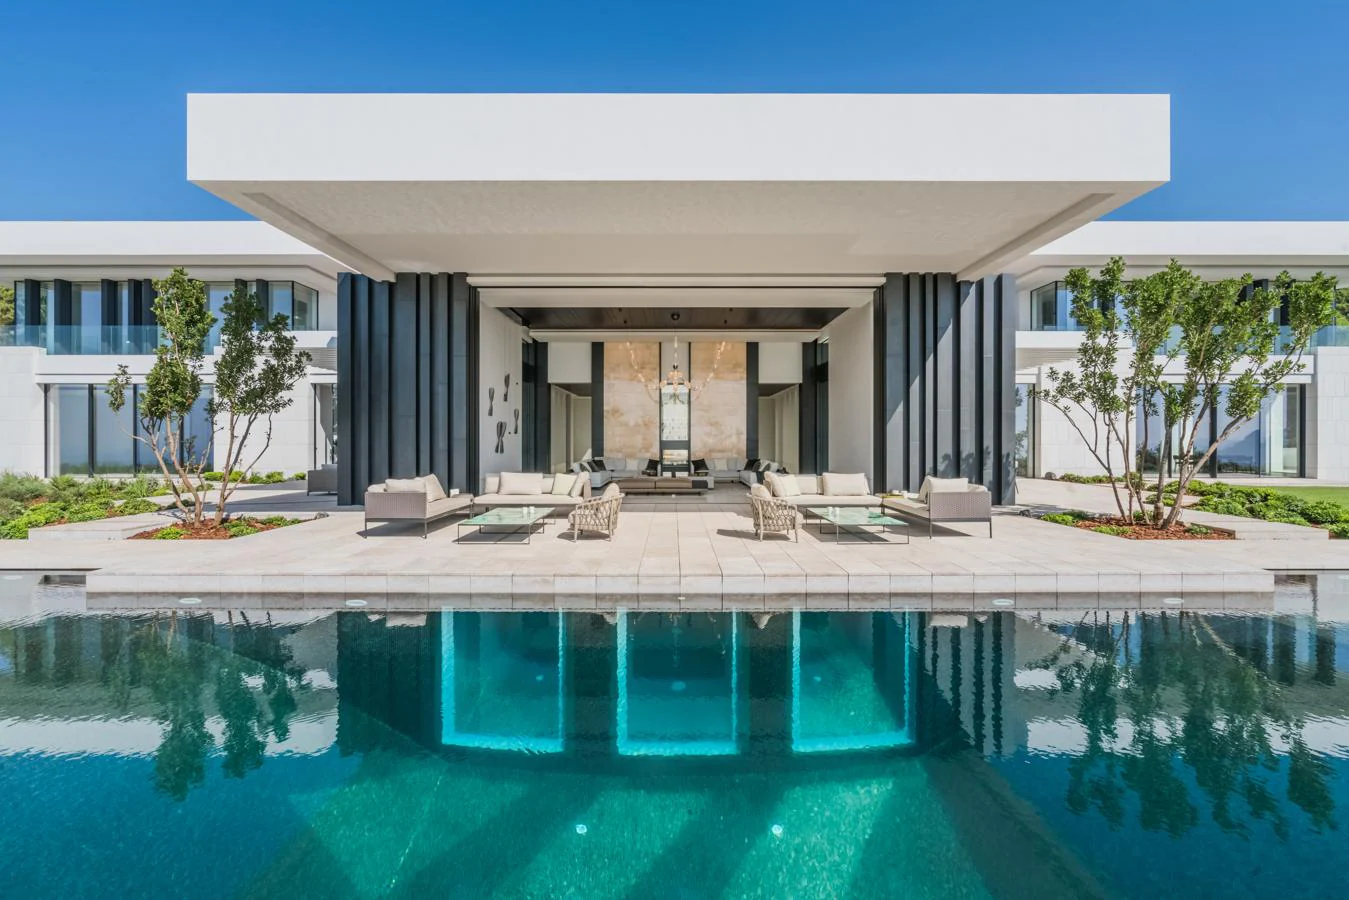 A la venta 32 millones de euros Villa Cullinam, la casa más lujosa España